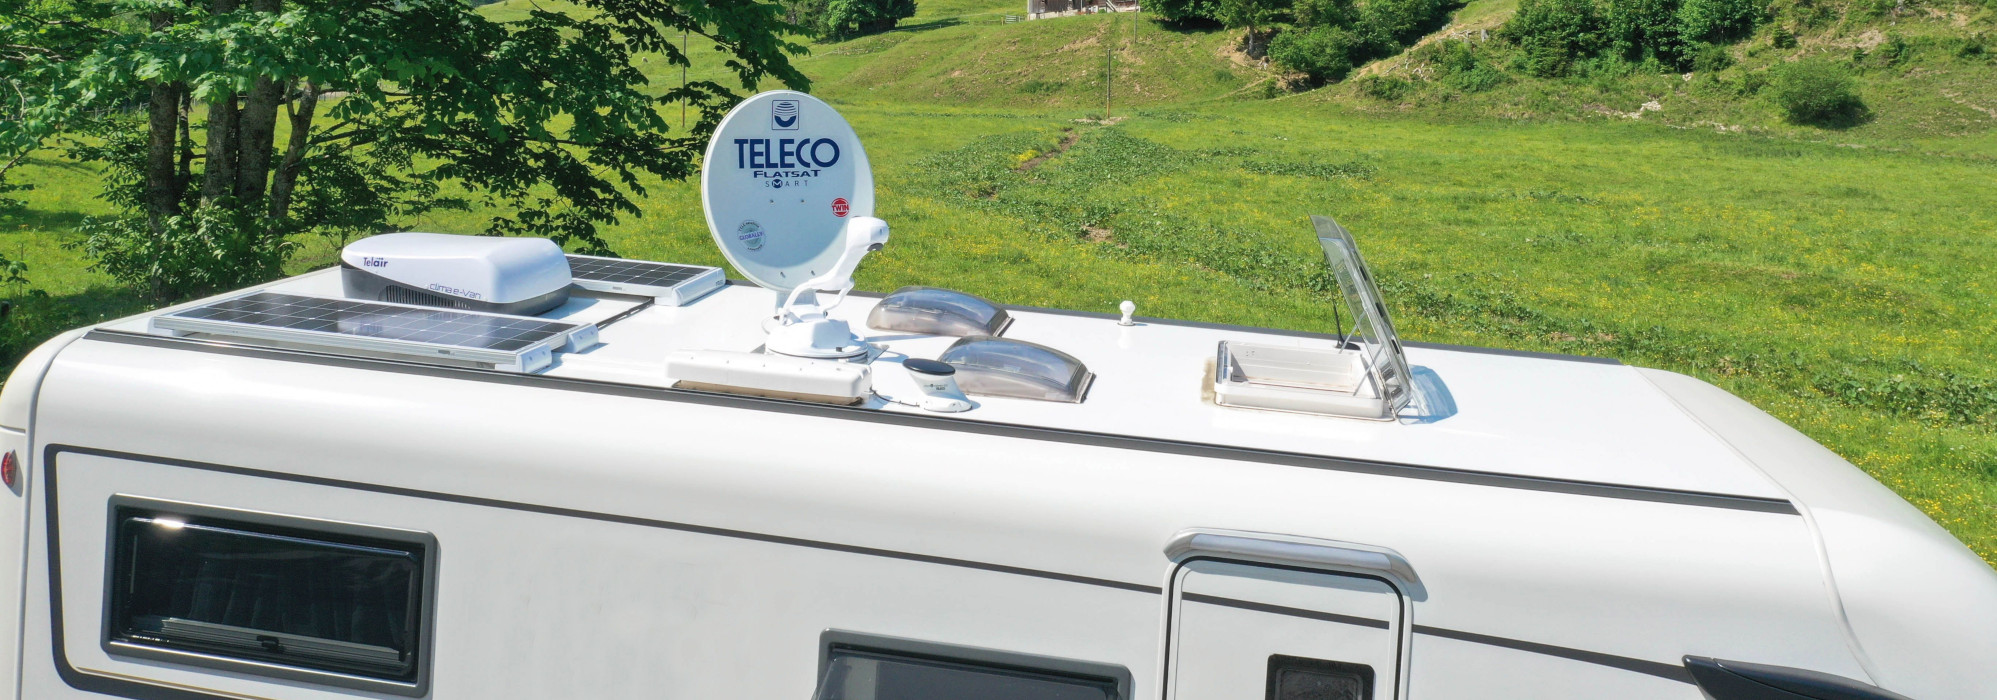 Teleco presenteert nieuw zonnepaneel van 130 watt